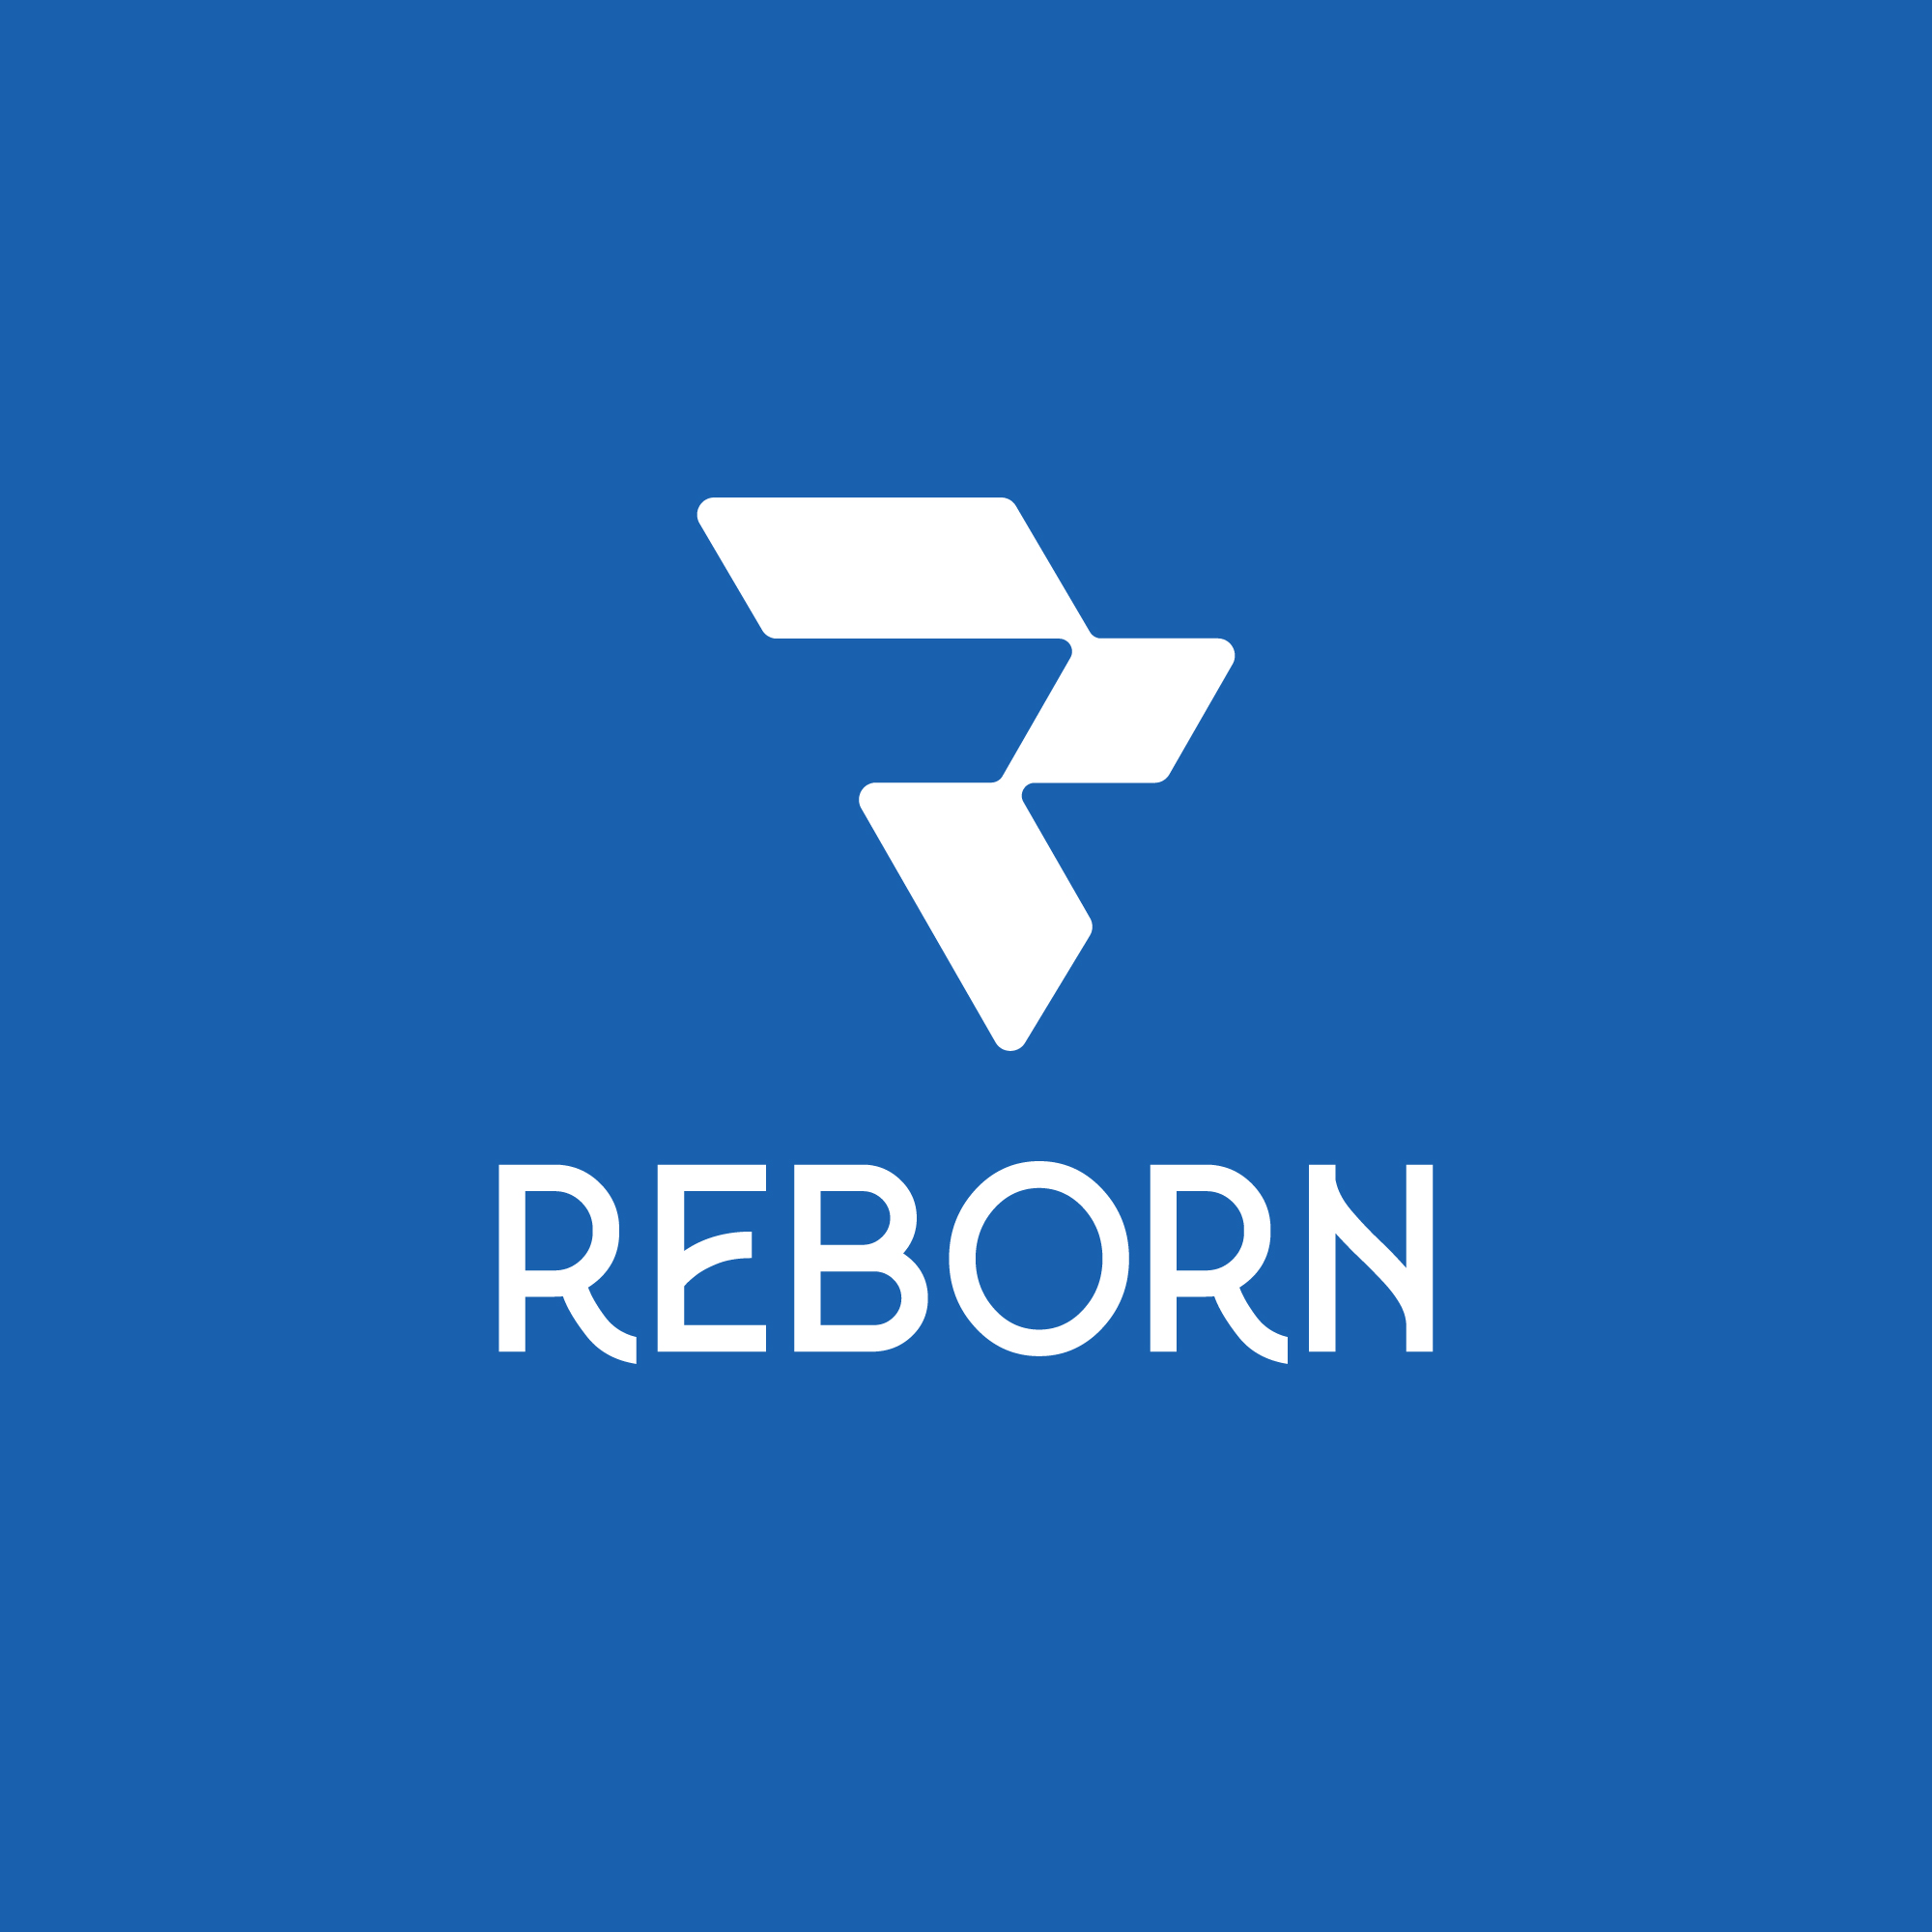 Modern R Monogram Logo cover image.